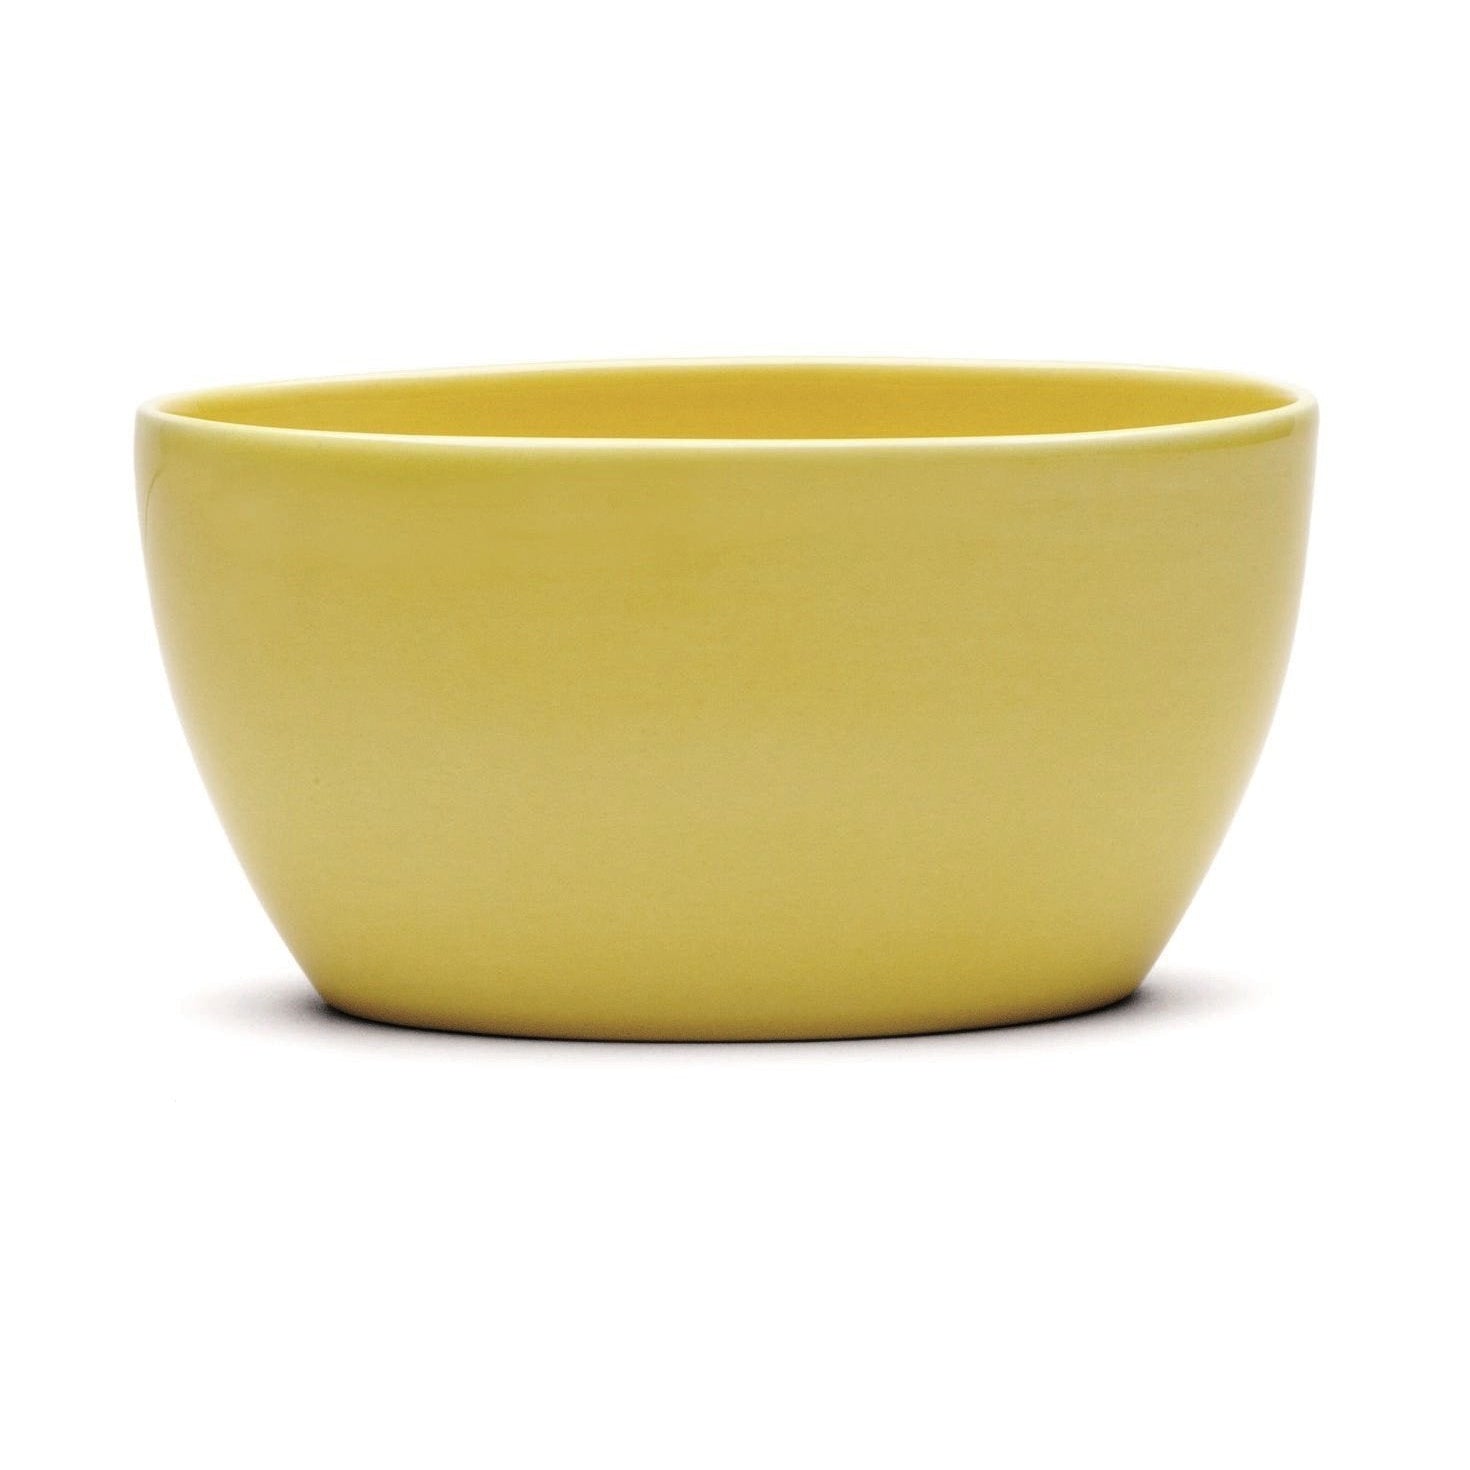 Kähler Ursula Bowl giallo, medio